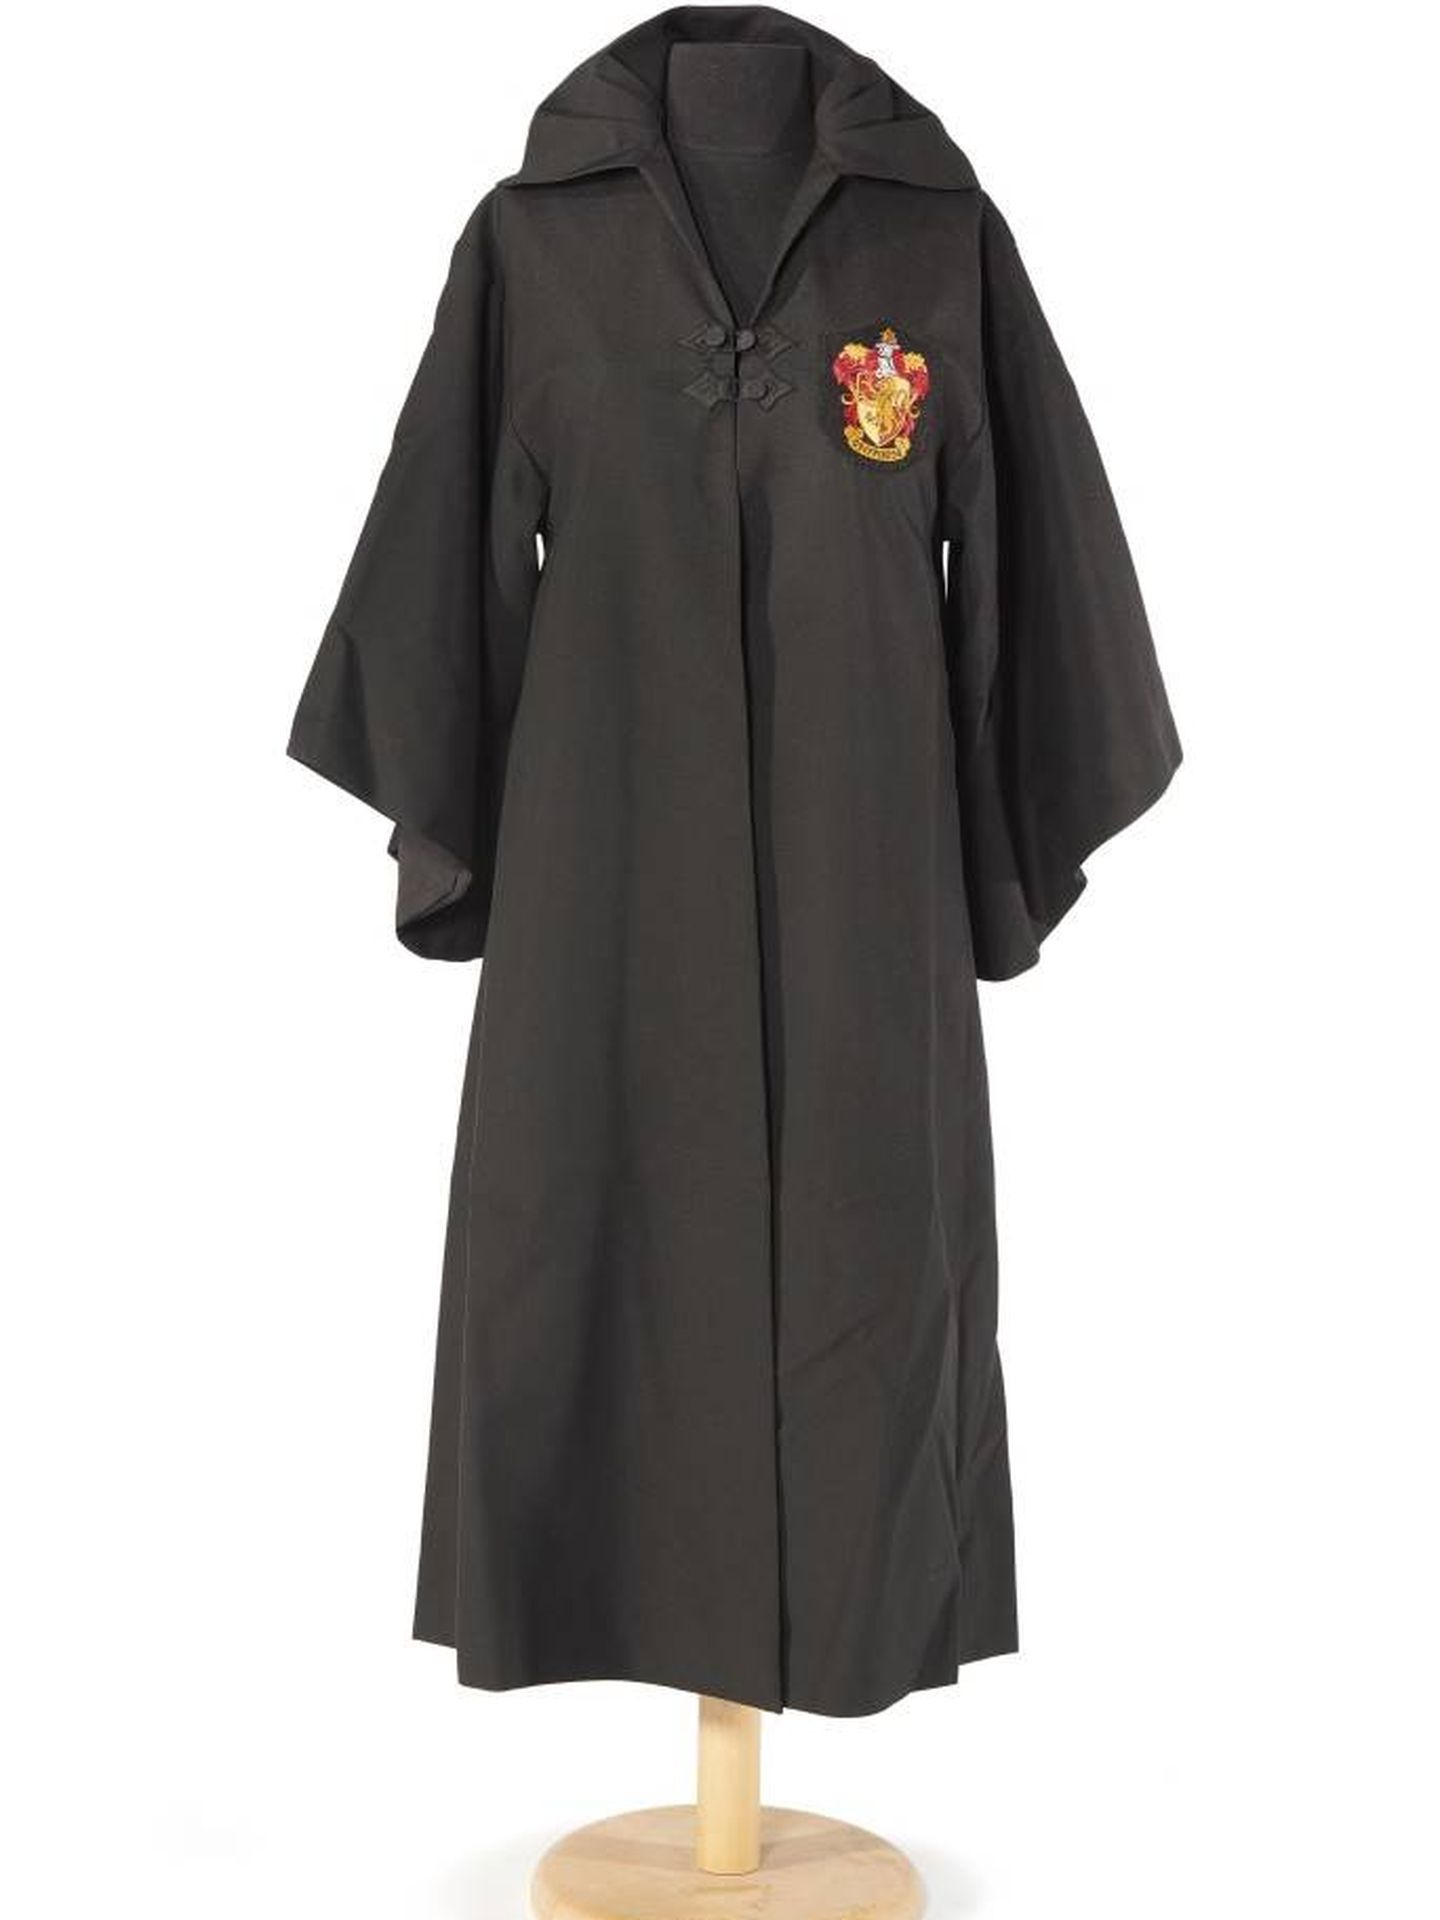 La túnica de Gryffindor usada por Daniel Radcliffe en la primera película de Harry Potter. (DR)